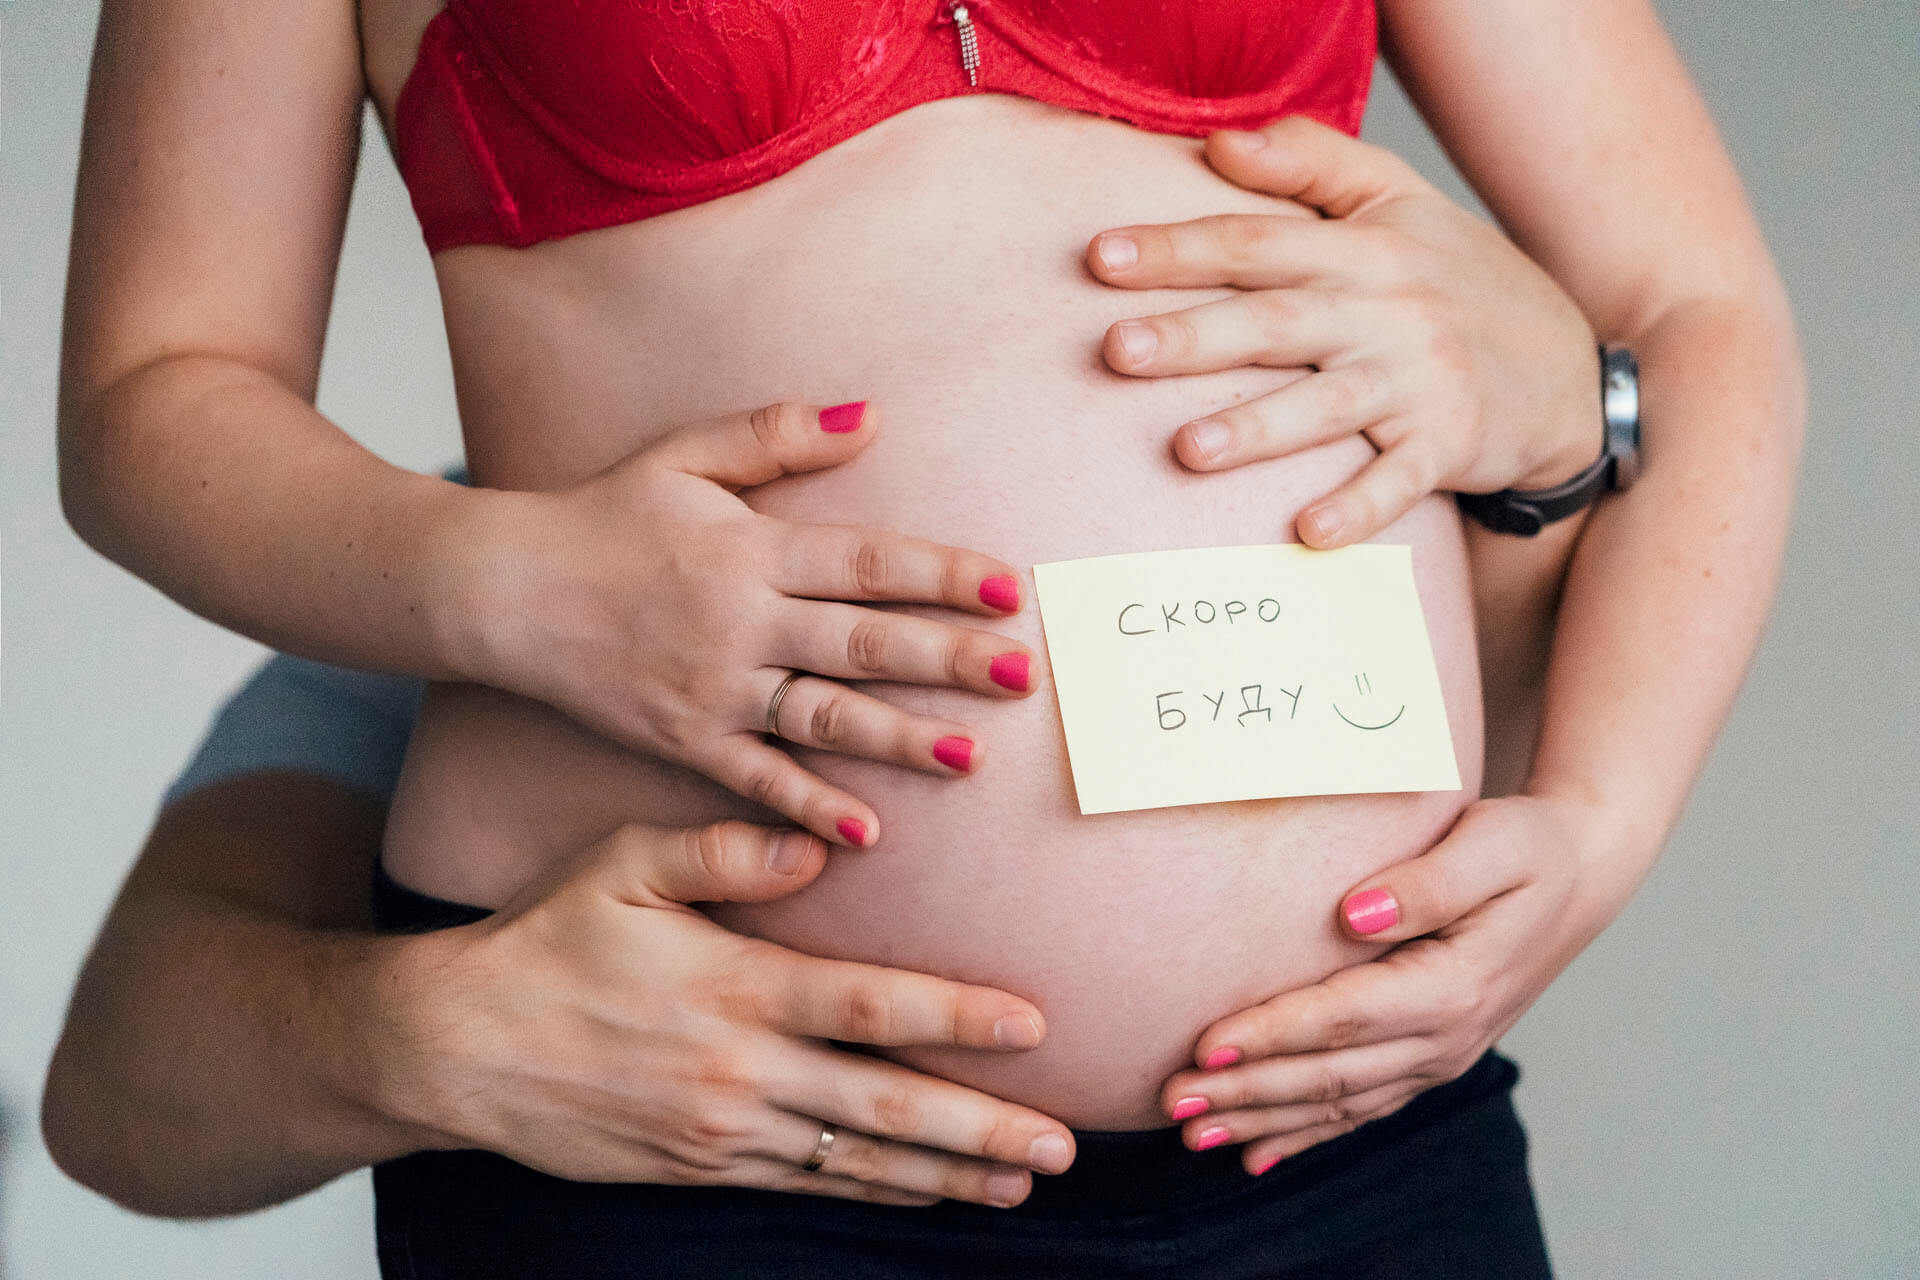 26 недель тянет низ. Фотосессия во время беременности. Молозиво при беременности.